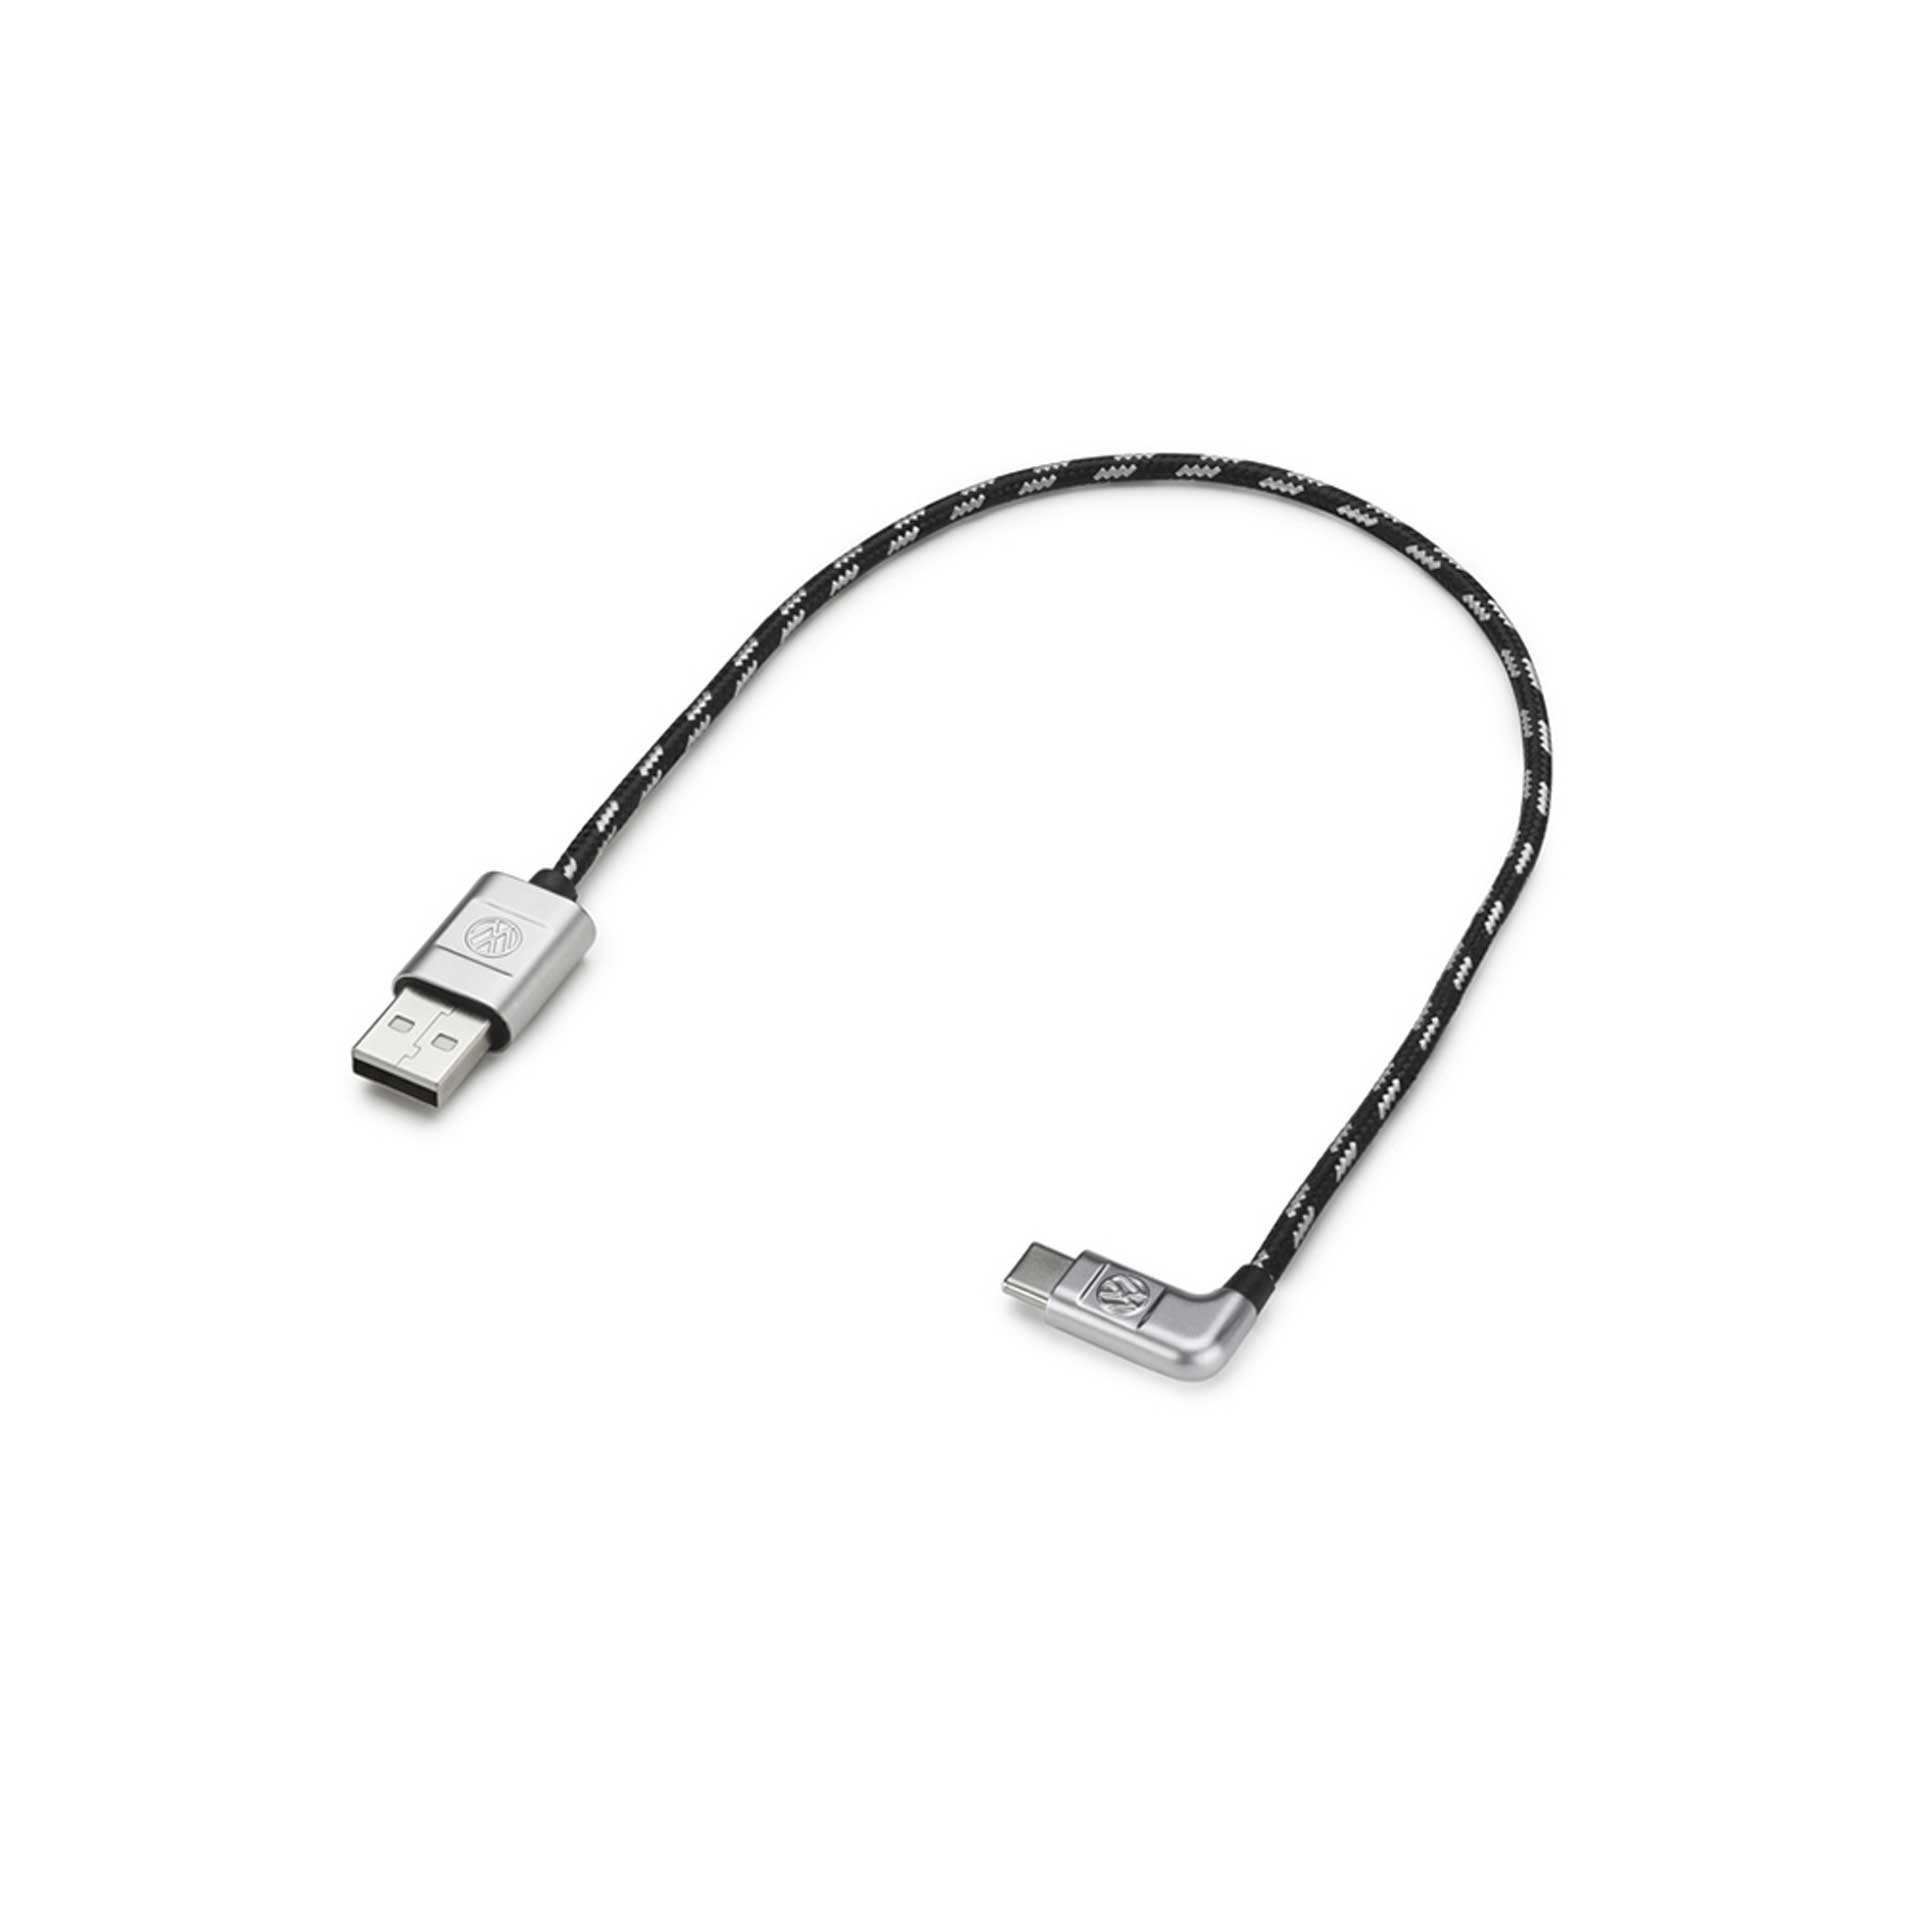 Volkswagen Anschlusskabel Ladekabel USB-A auf USB-C Premium Kabel gewinkelt 30 cm